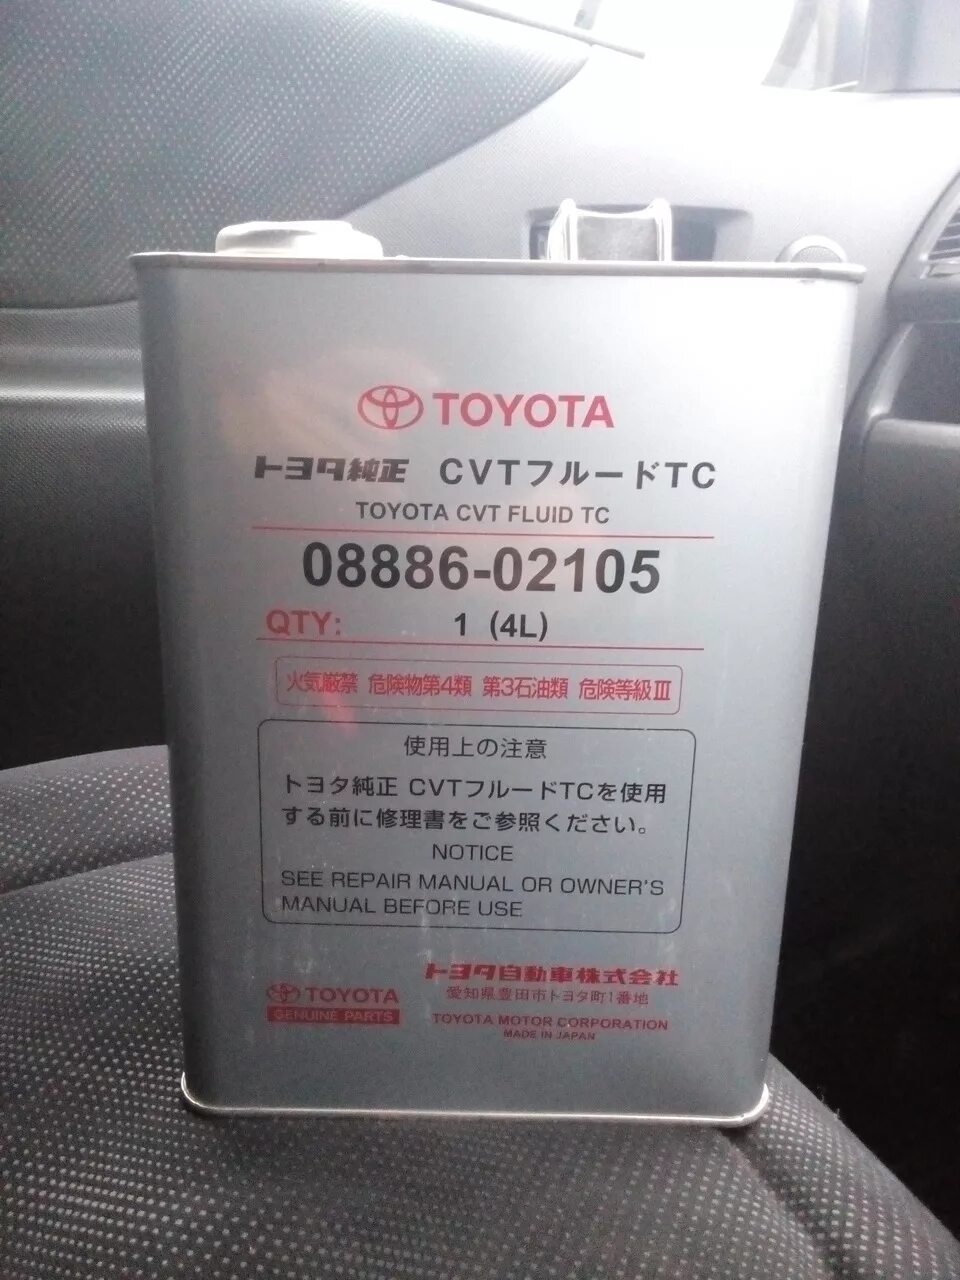 Масло в вариатор Тойота рав 4 2014 года в. Масло для вариатора Тойота Toyota Corolla 2013 артикул. Масло для вариатора Тойота рав 4 4 2018 года. Масло для вариатора Тойота рав 4. Масло вариатор рактис